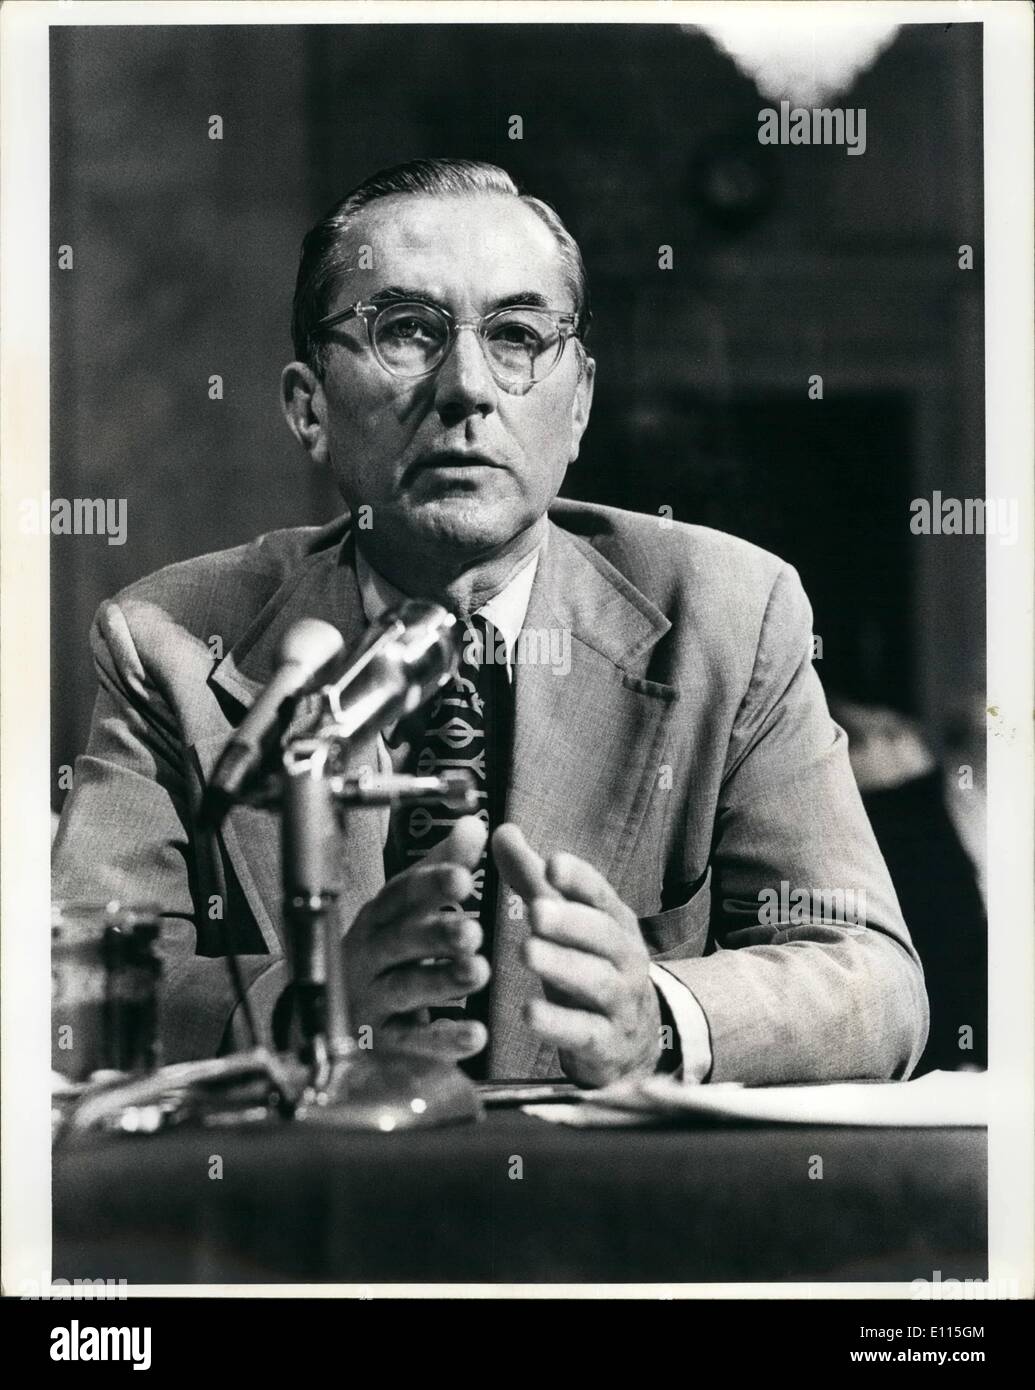 Septiembre 09, 1975 - Washington, D.C.: William E. Colby, Director de la CIA, testificando ante el Comité de Inteligencia del Senado. Foto de stock